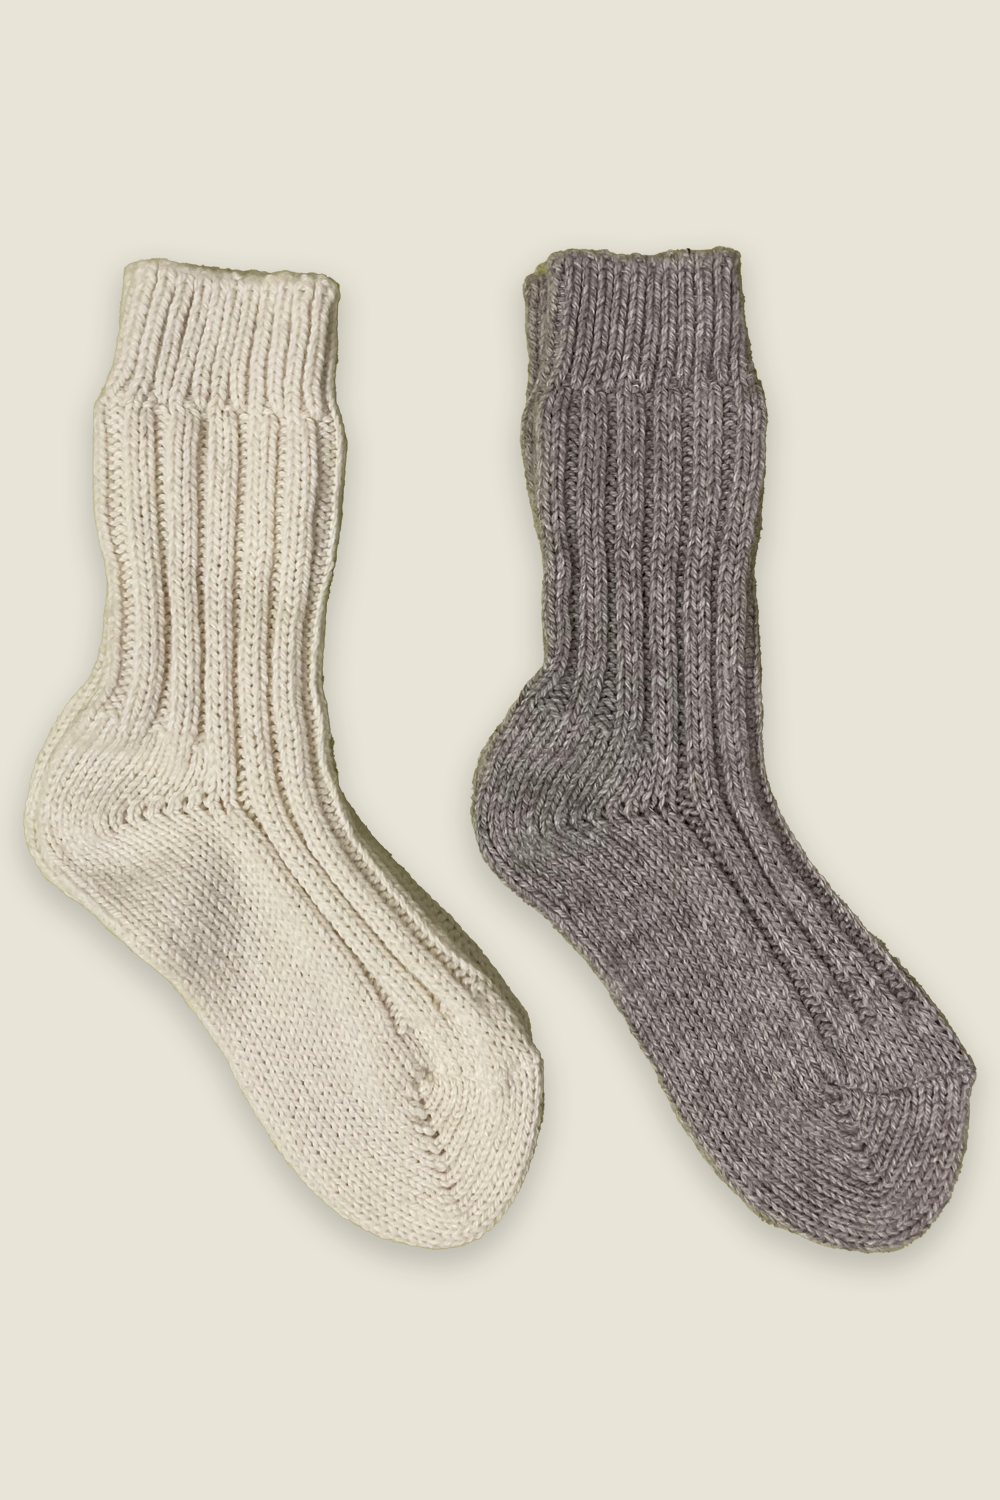 Calcetines de alpaca - natural y gris - 2 pares